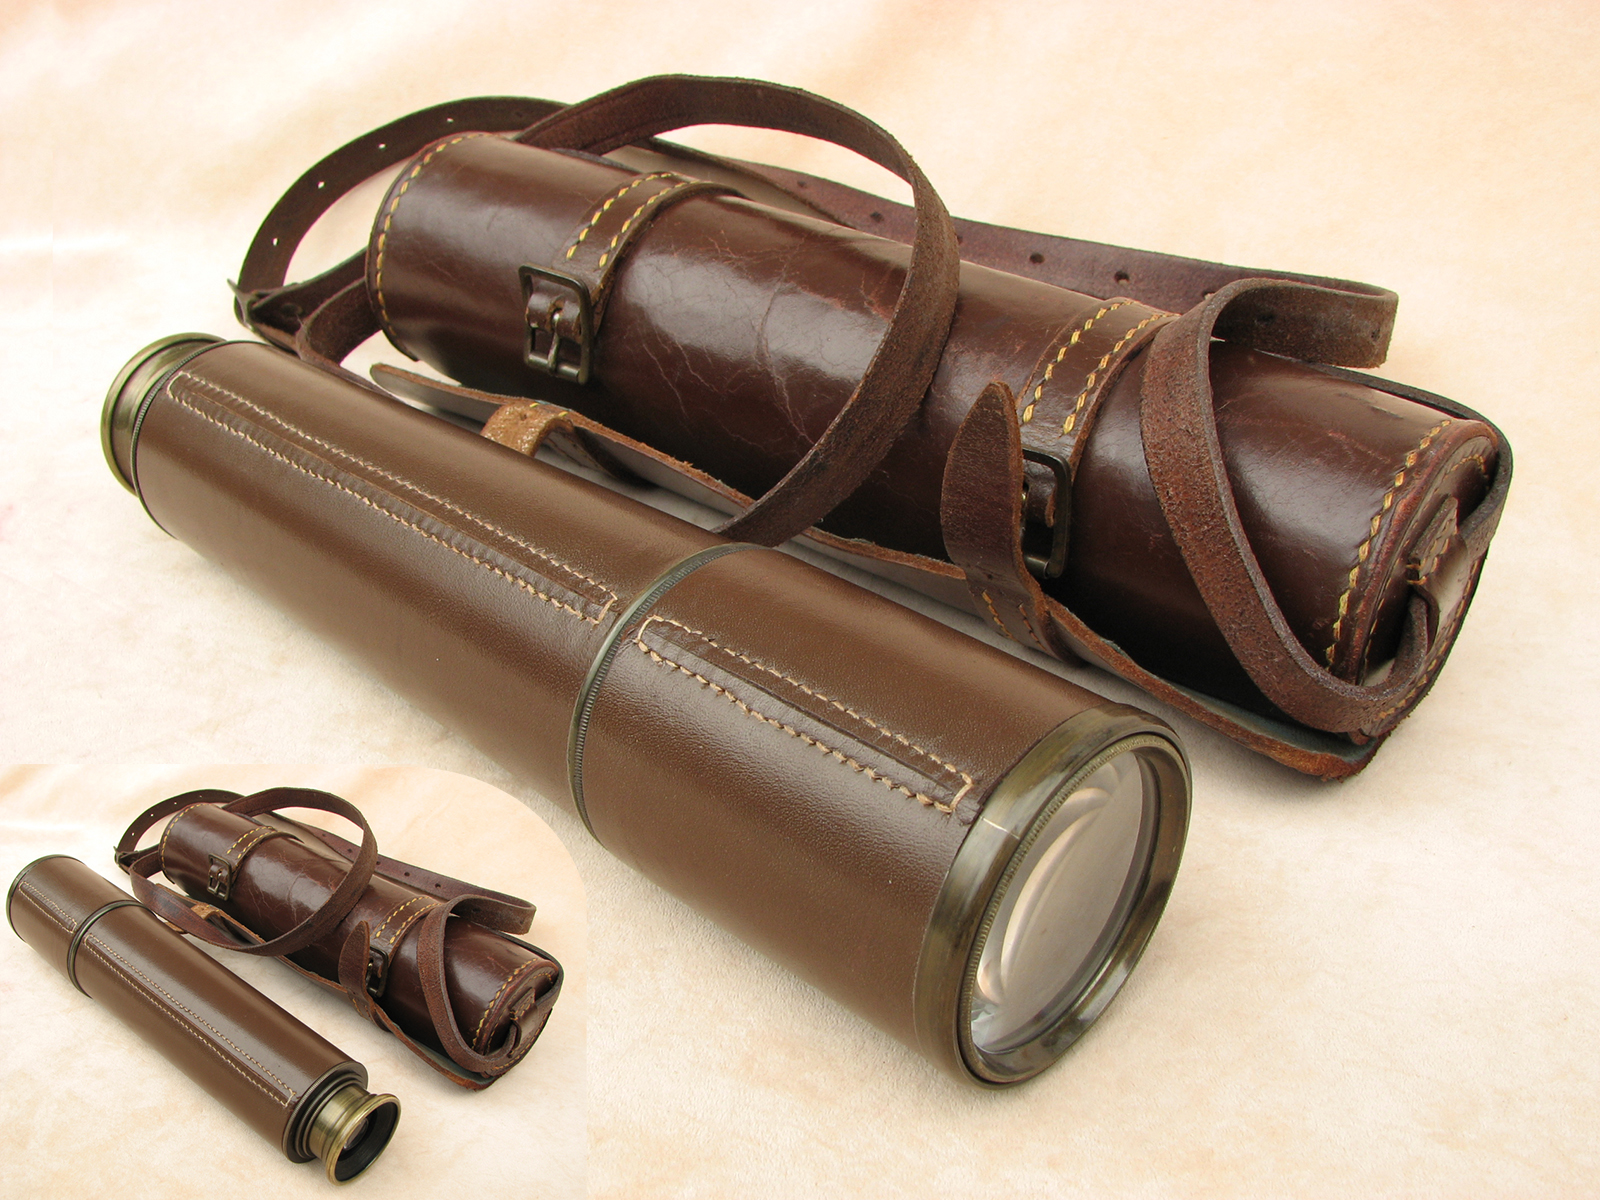 Broadhurst Clarkson 3 draw field telescope in leather wrap case.